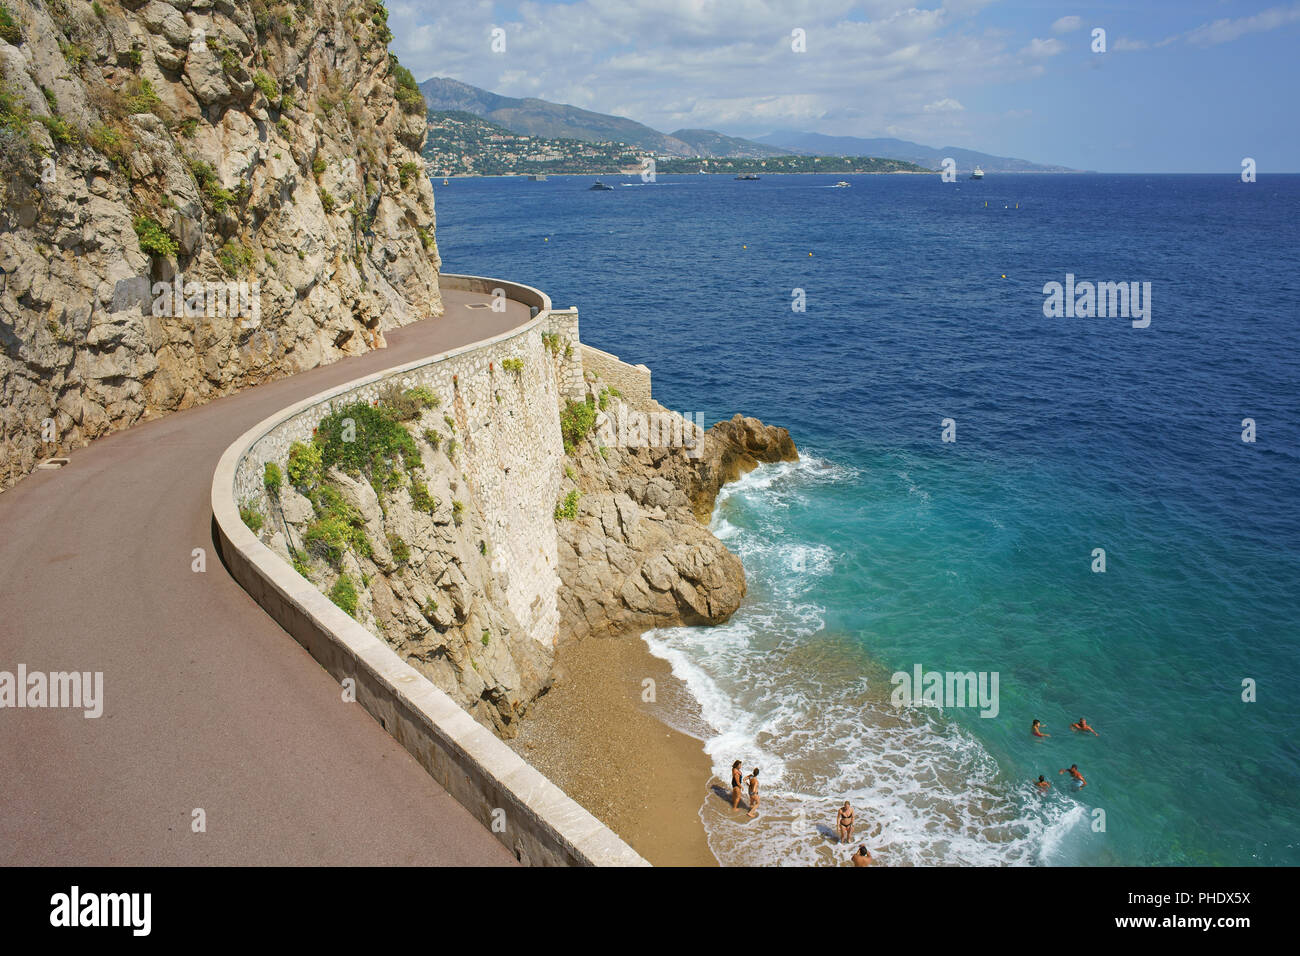 LUFTAUFNAHME von einem 6-Meter-Mast. Kleiner unberührter Strand in einer versteckten Bucht in der dicht besiedelten Stadt / Land Monaco. Stockfoto